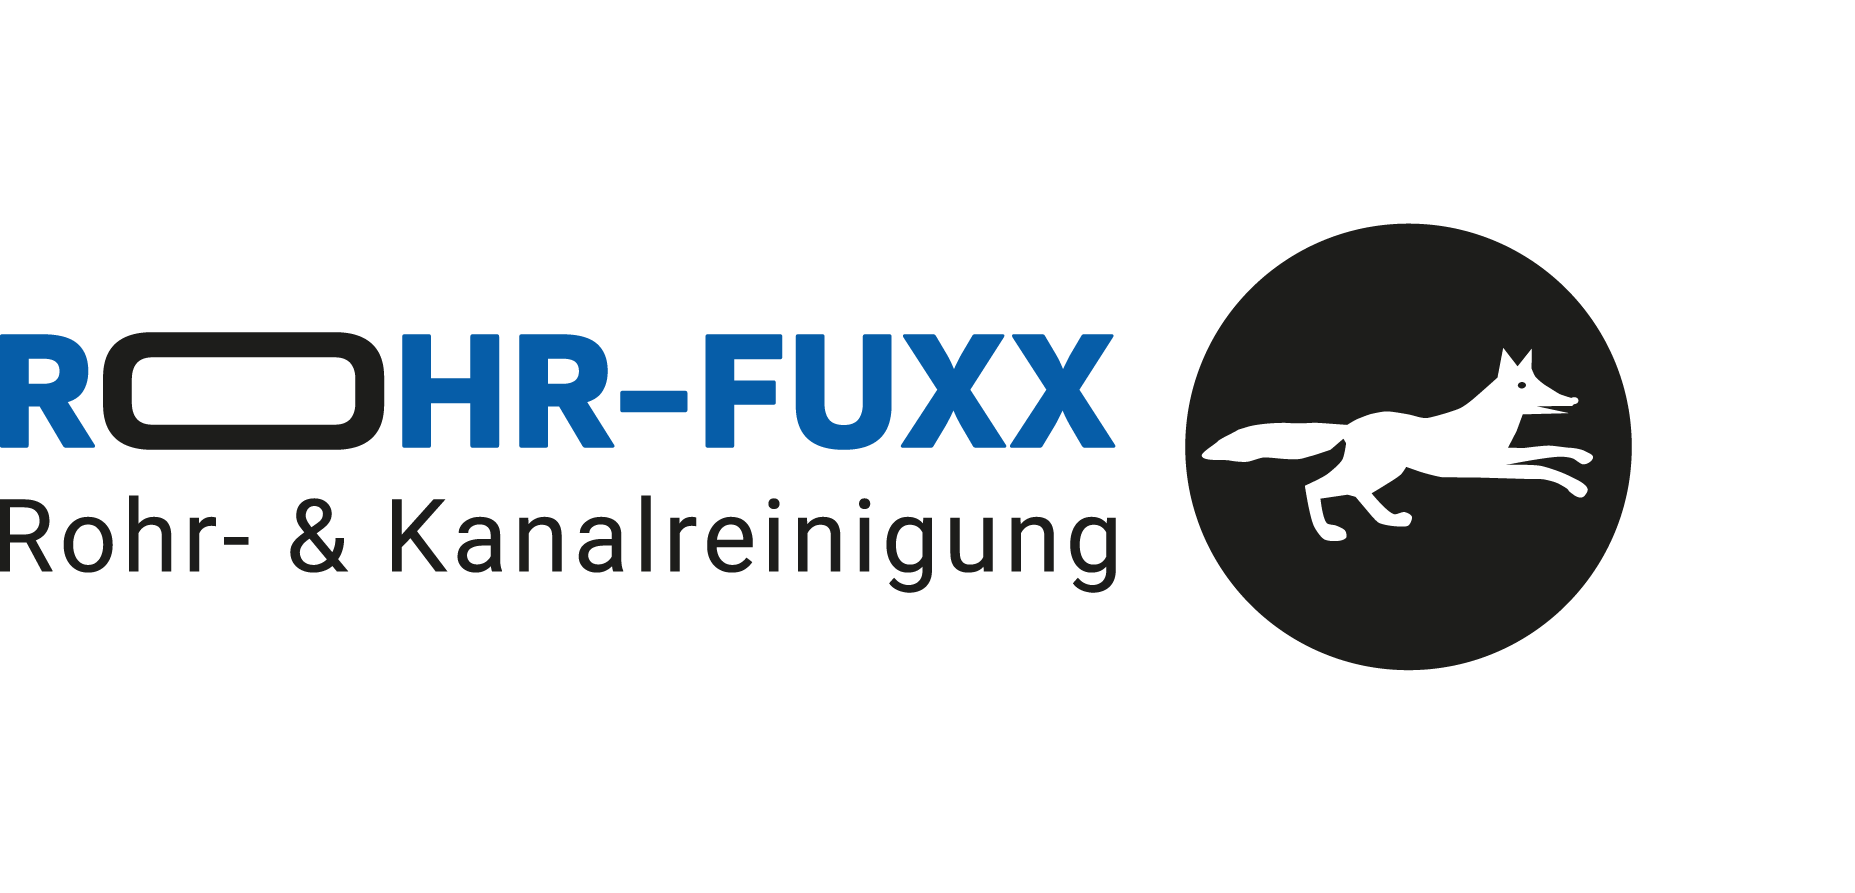 Rohr-Fuxx Rohr- & Kanalreingung Logo